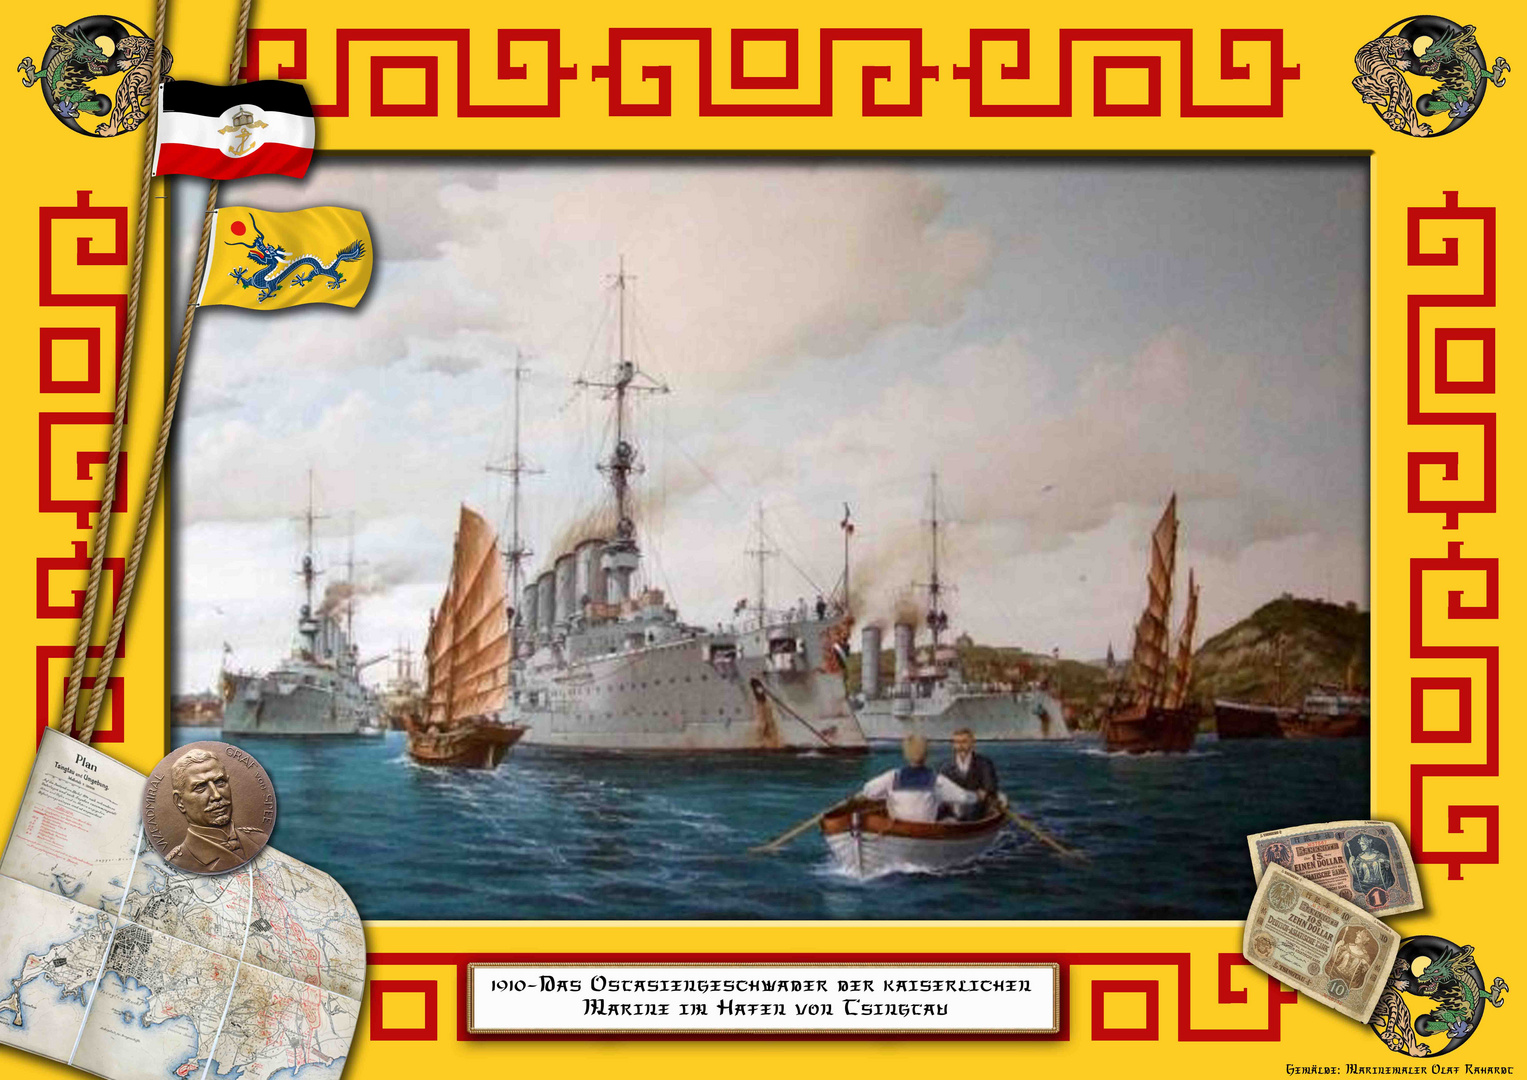 1910 Das Ostasiengeschwader der kaiserlichen Marine im Hafen von Tsingtau